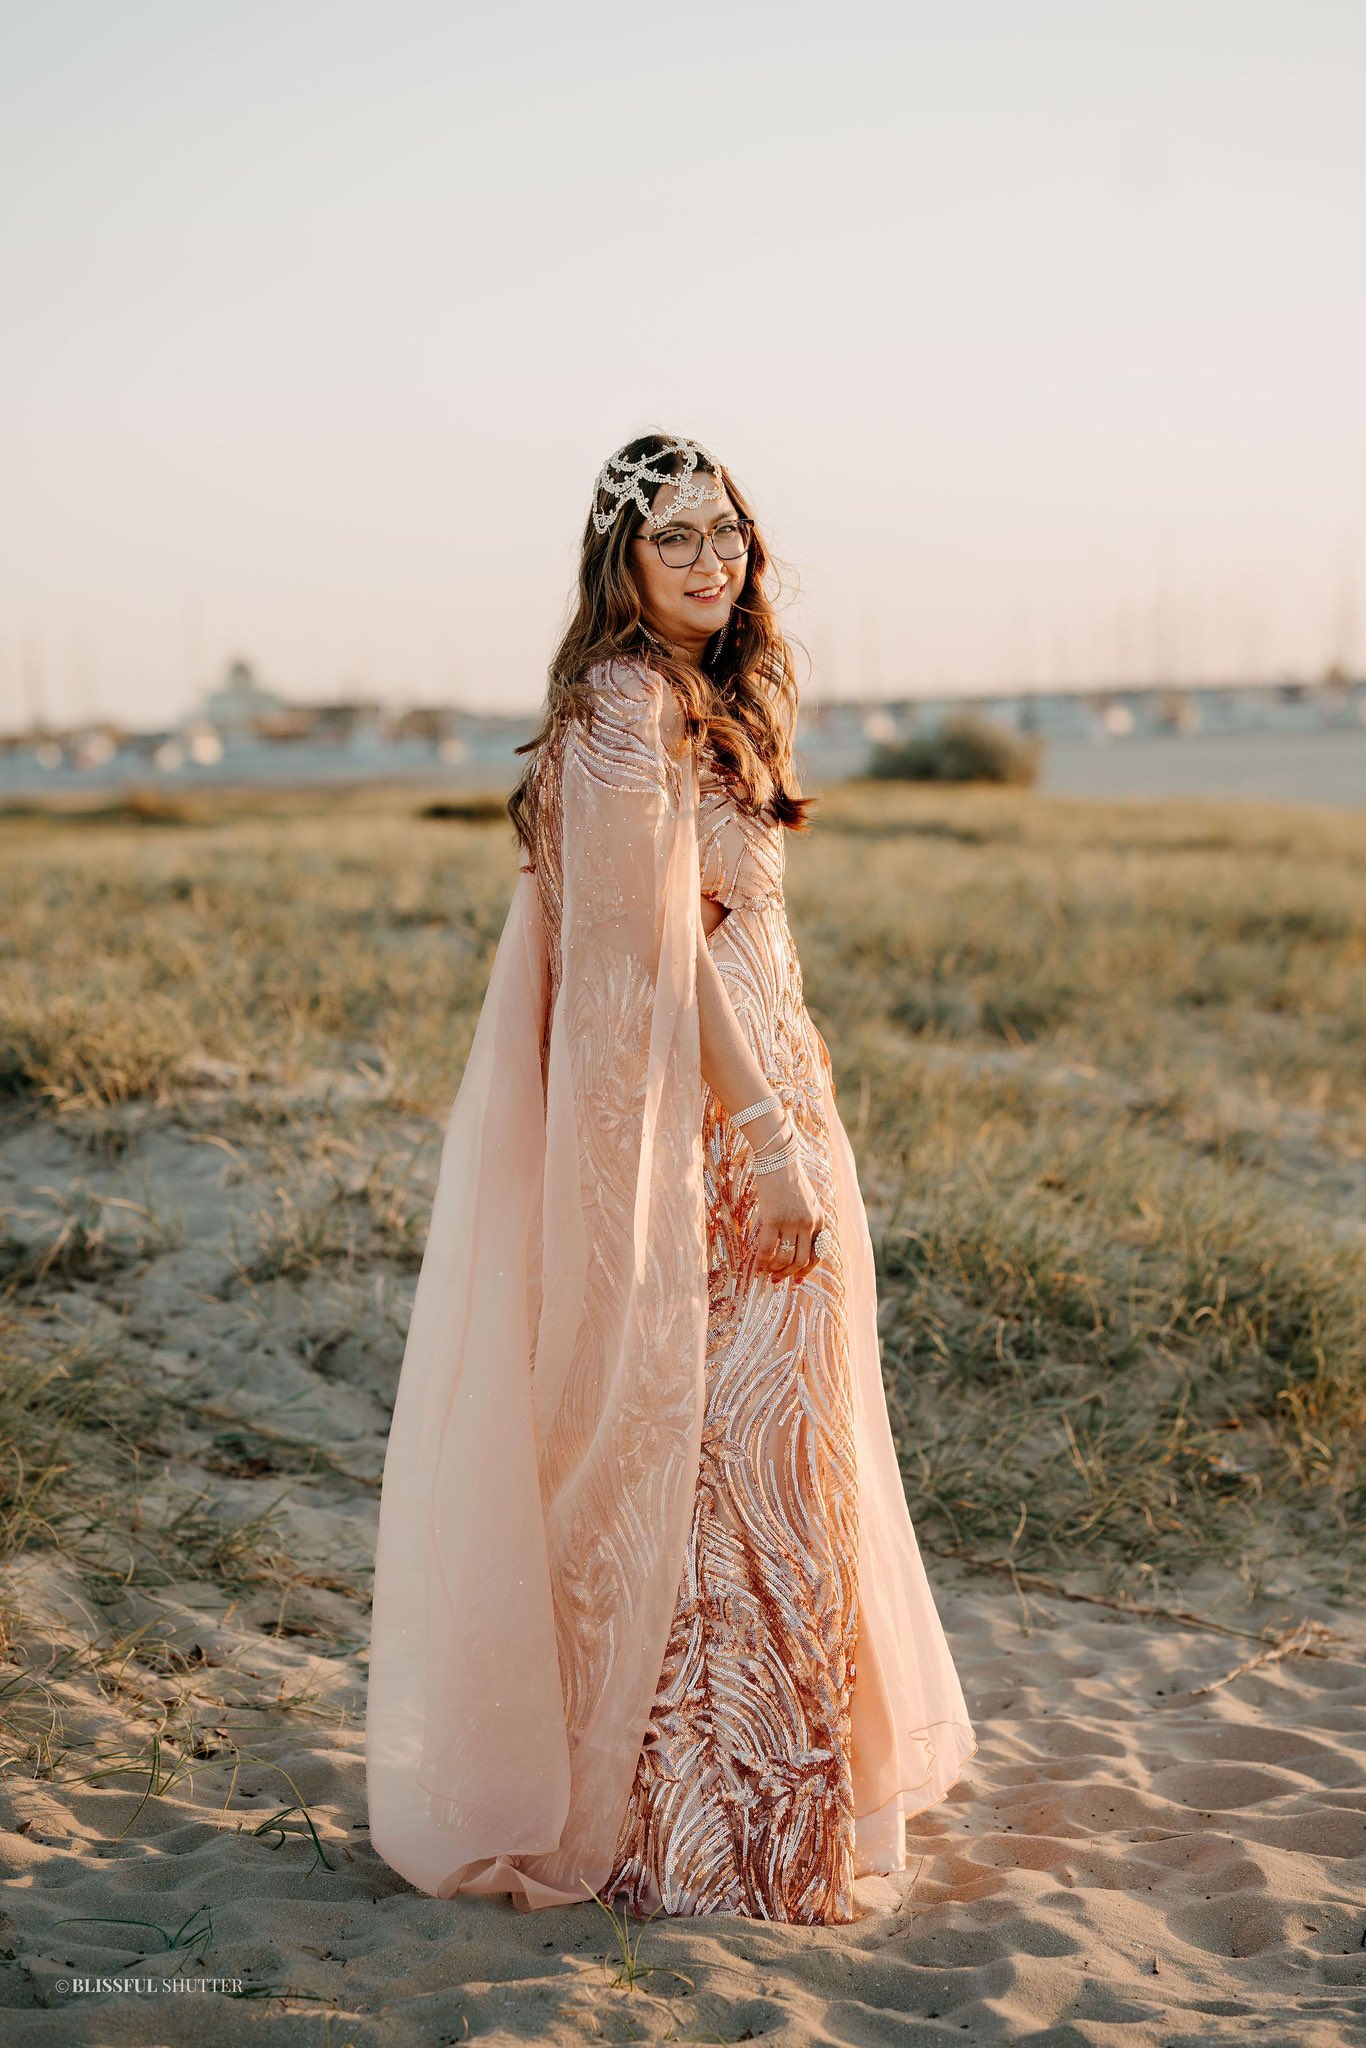 Amazon.com: 5 Size Sexy Genie Belly Women Dancer Arabian Nights Dress Adult  Costume With S,M,L,XL,XXL Size (XXL) : Clothing, Shoes & Jewelry